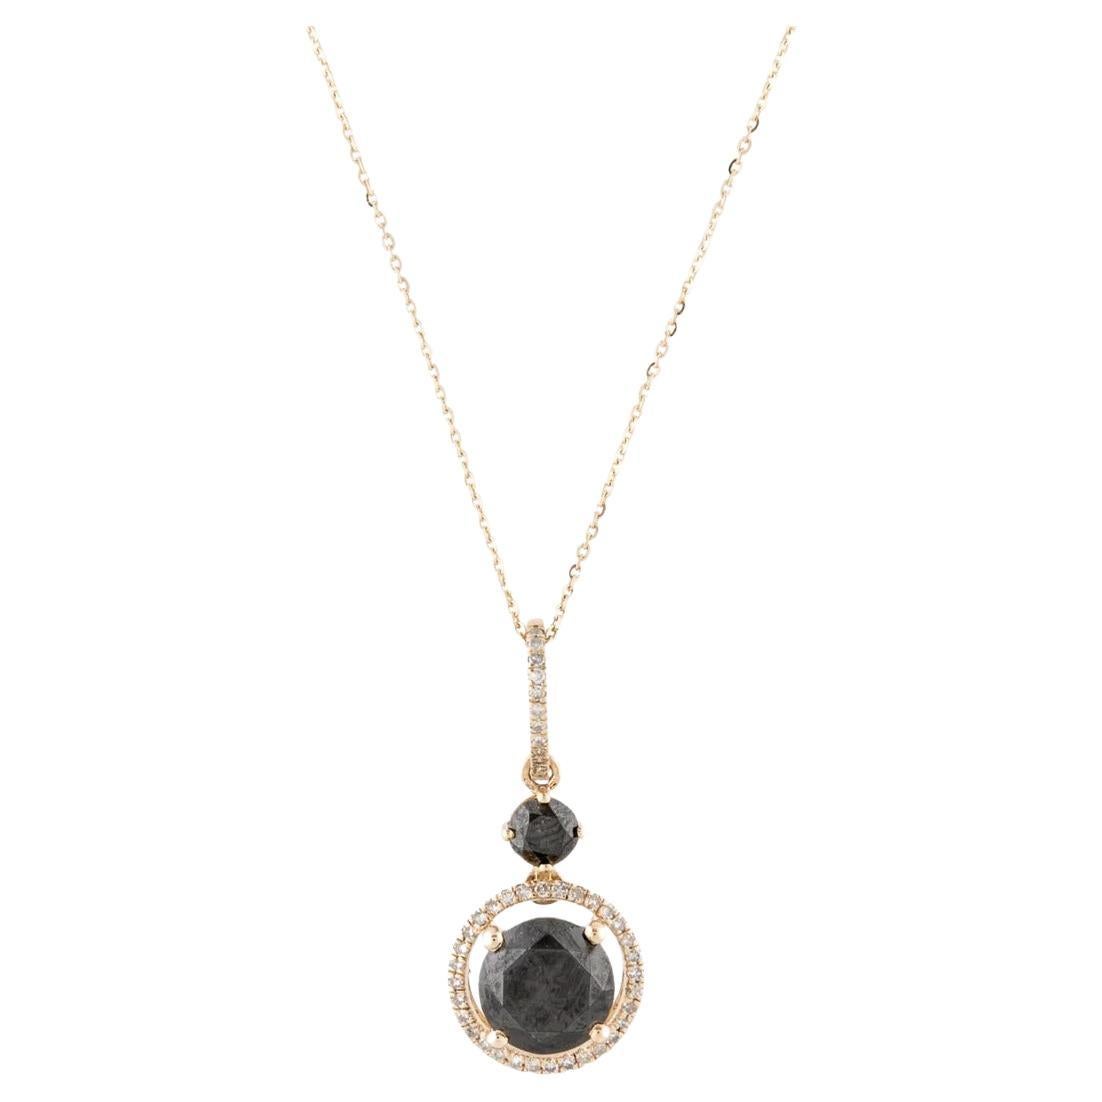 14K Diamond Pendant Necklace, 3.77ctw - Exquisite Statement Jewelry, Luxury